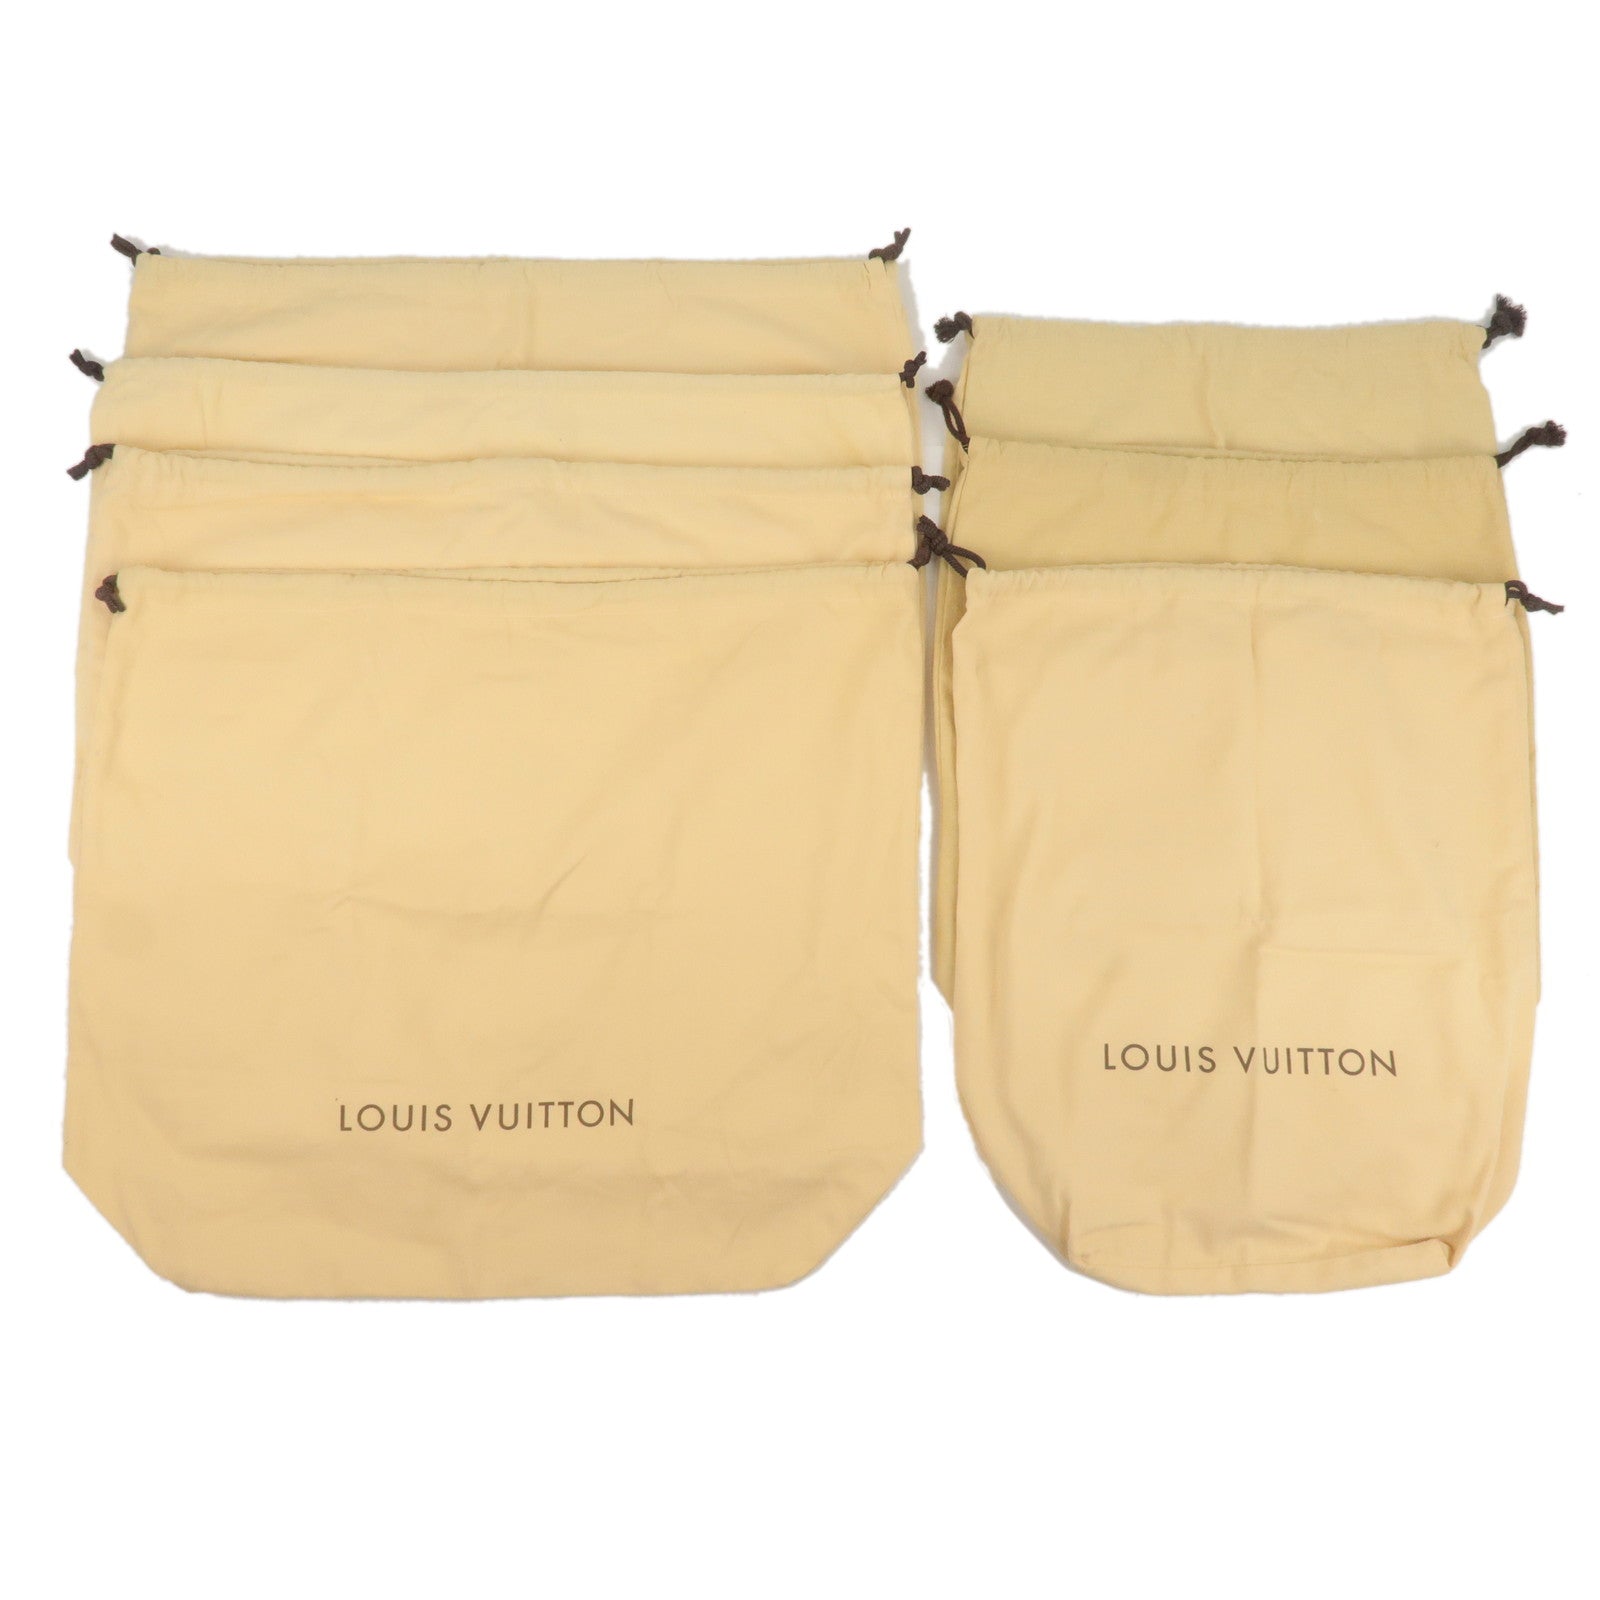 Louis Vuitton Dust Bag 10 Set Brown Beige 100% Cotton Authentic